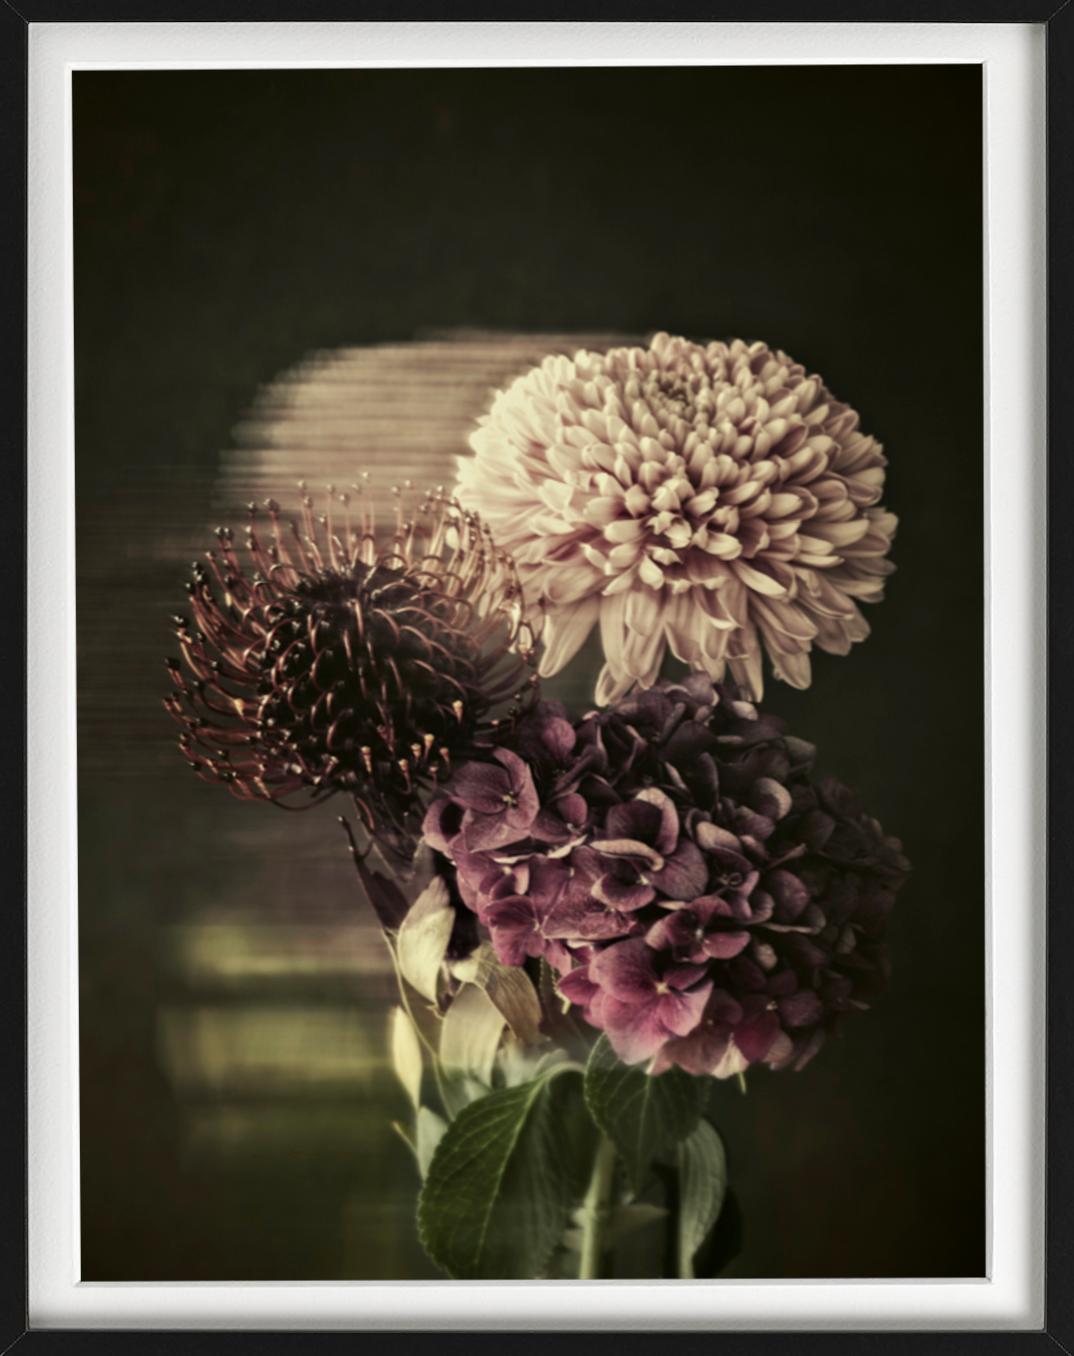 Blumenstrauß – Stillleben mit Blumenstrauß in Erde und dunklen Farben – Photograph von Tina Trumpp